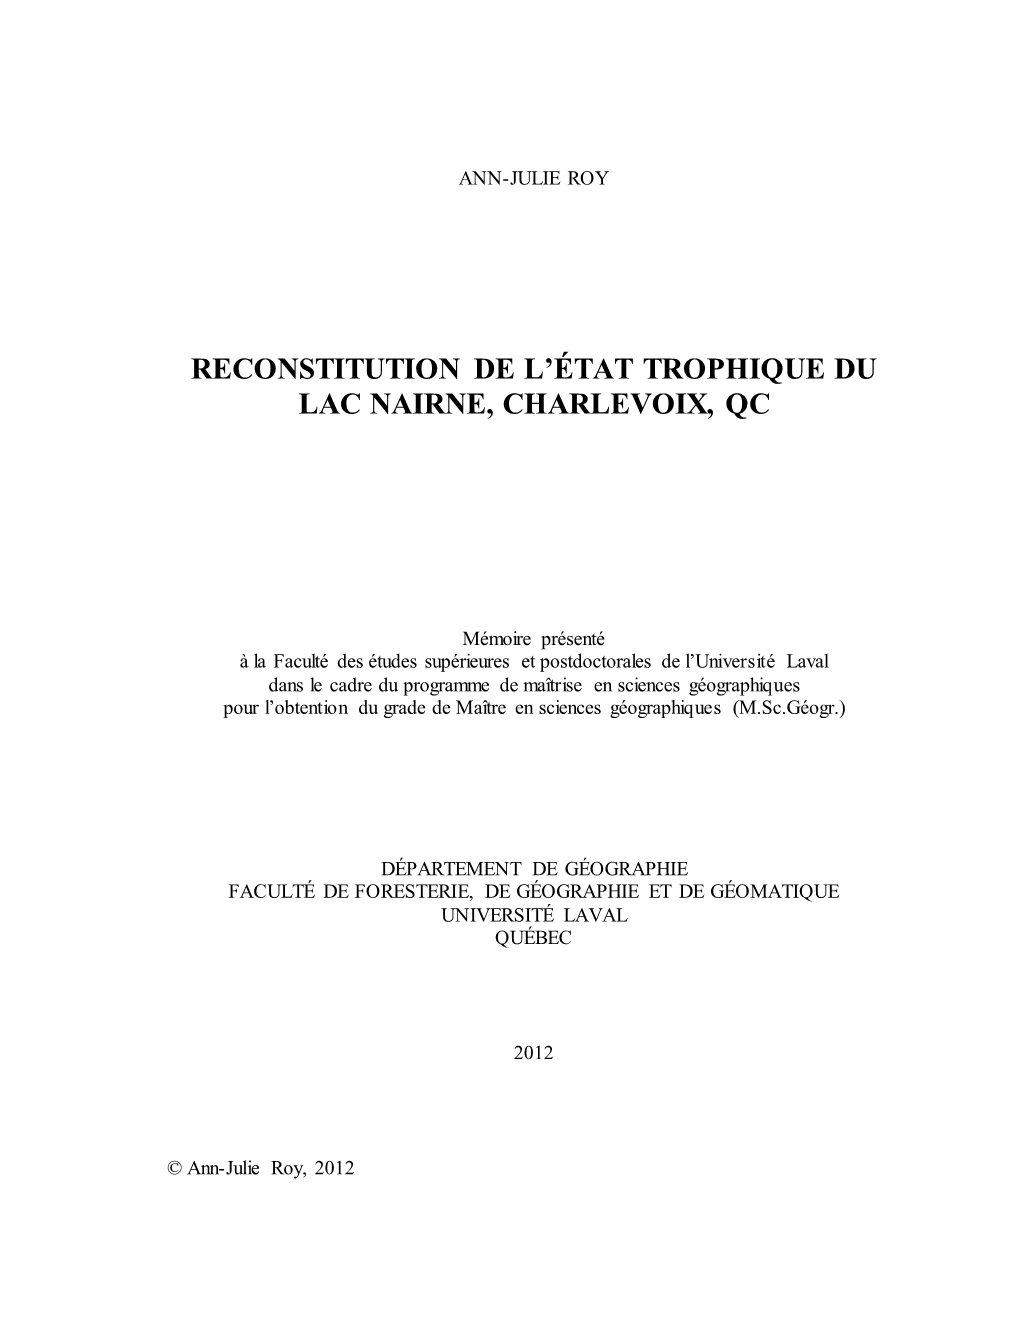 Reconstitution De L'état Trophique Du Lac Nairne, Charlevoix, Qc